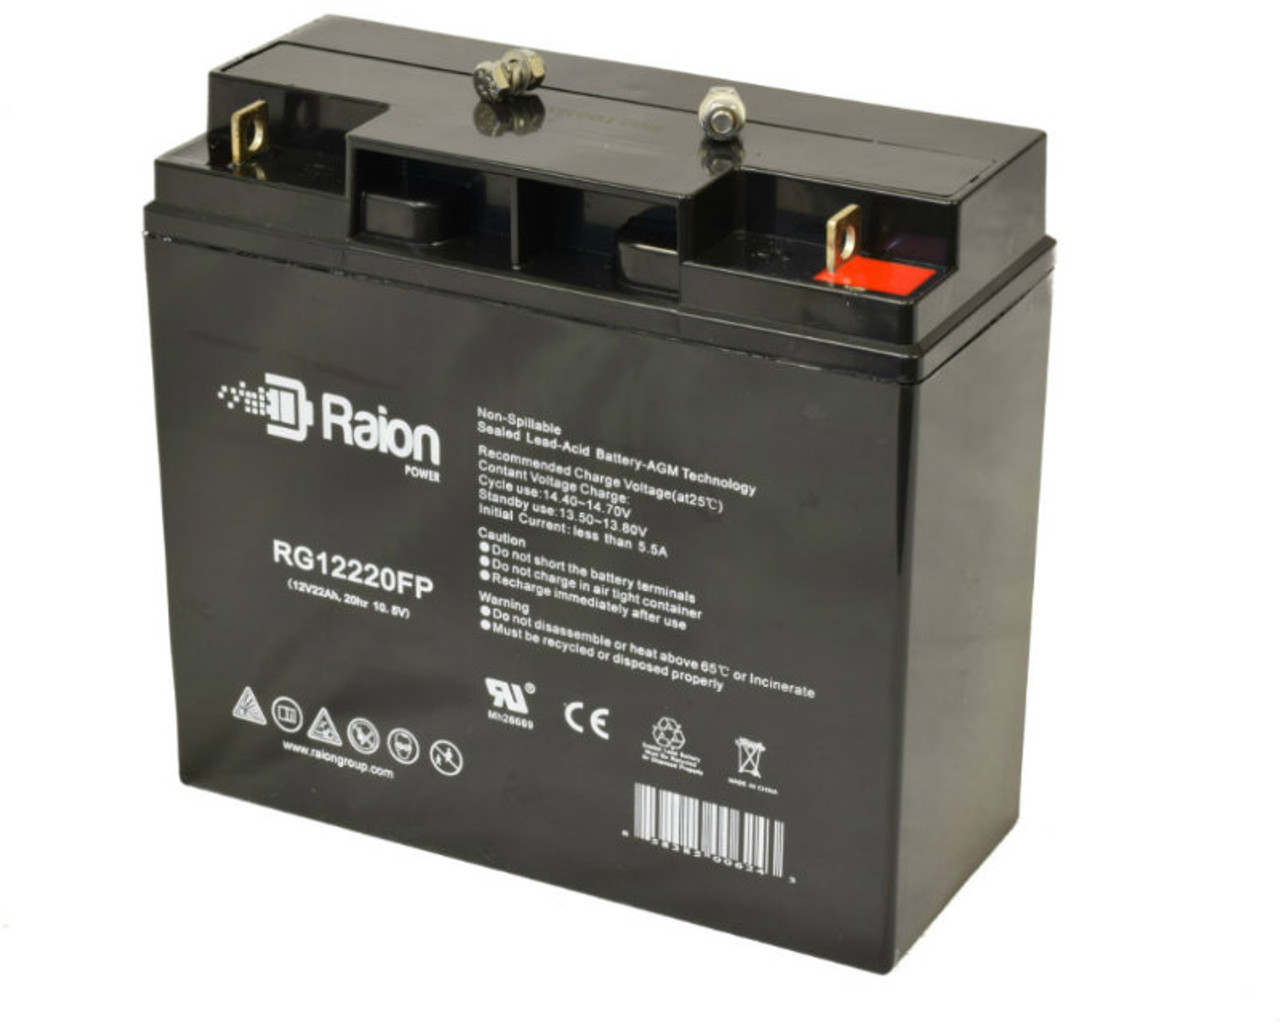 Raion Power Replacement 12V 22Ah Battery for DET Power SJ12V22Ah - 1 Pack